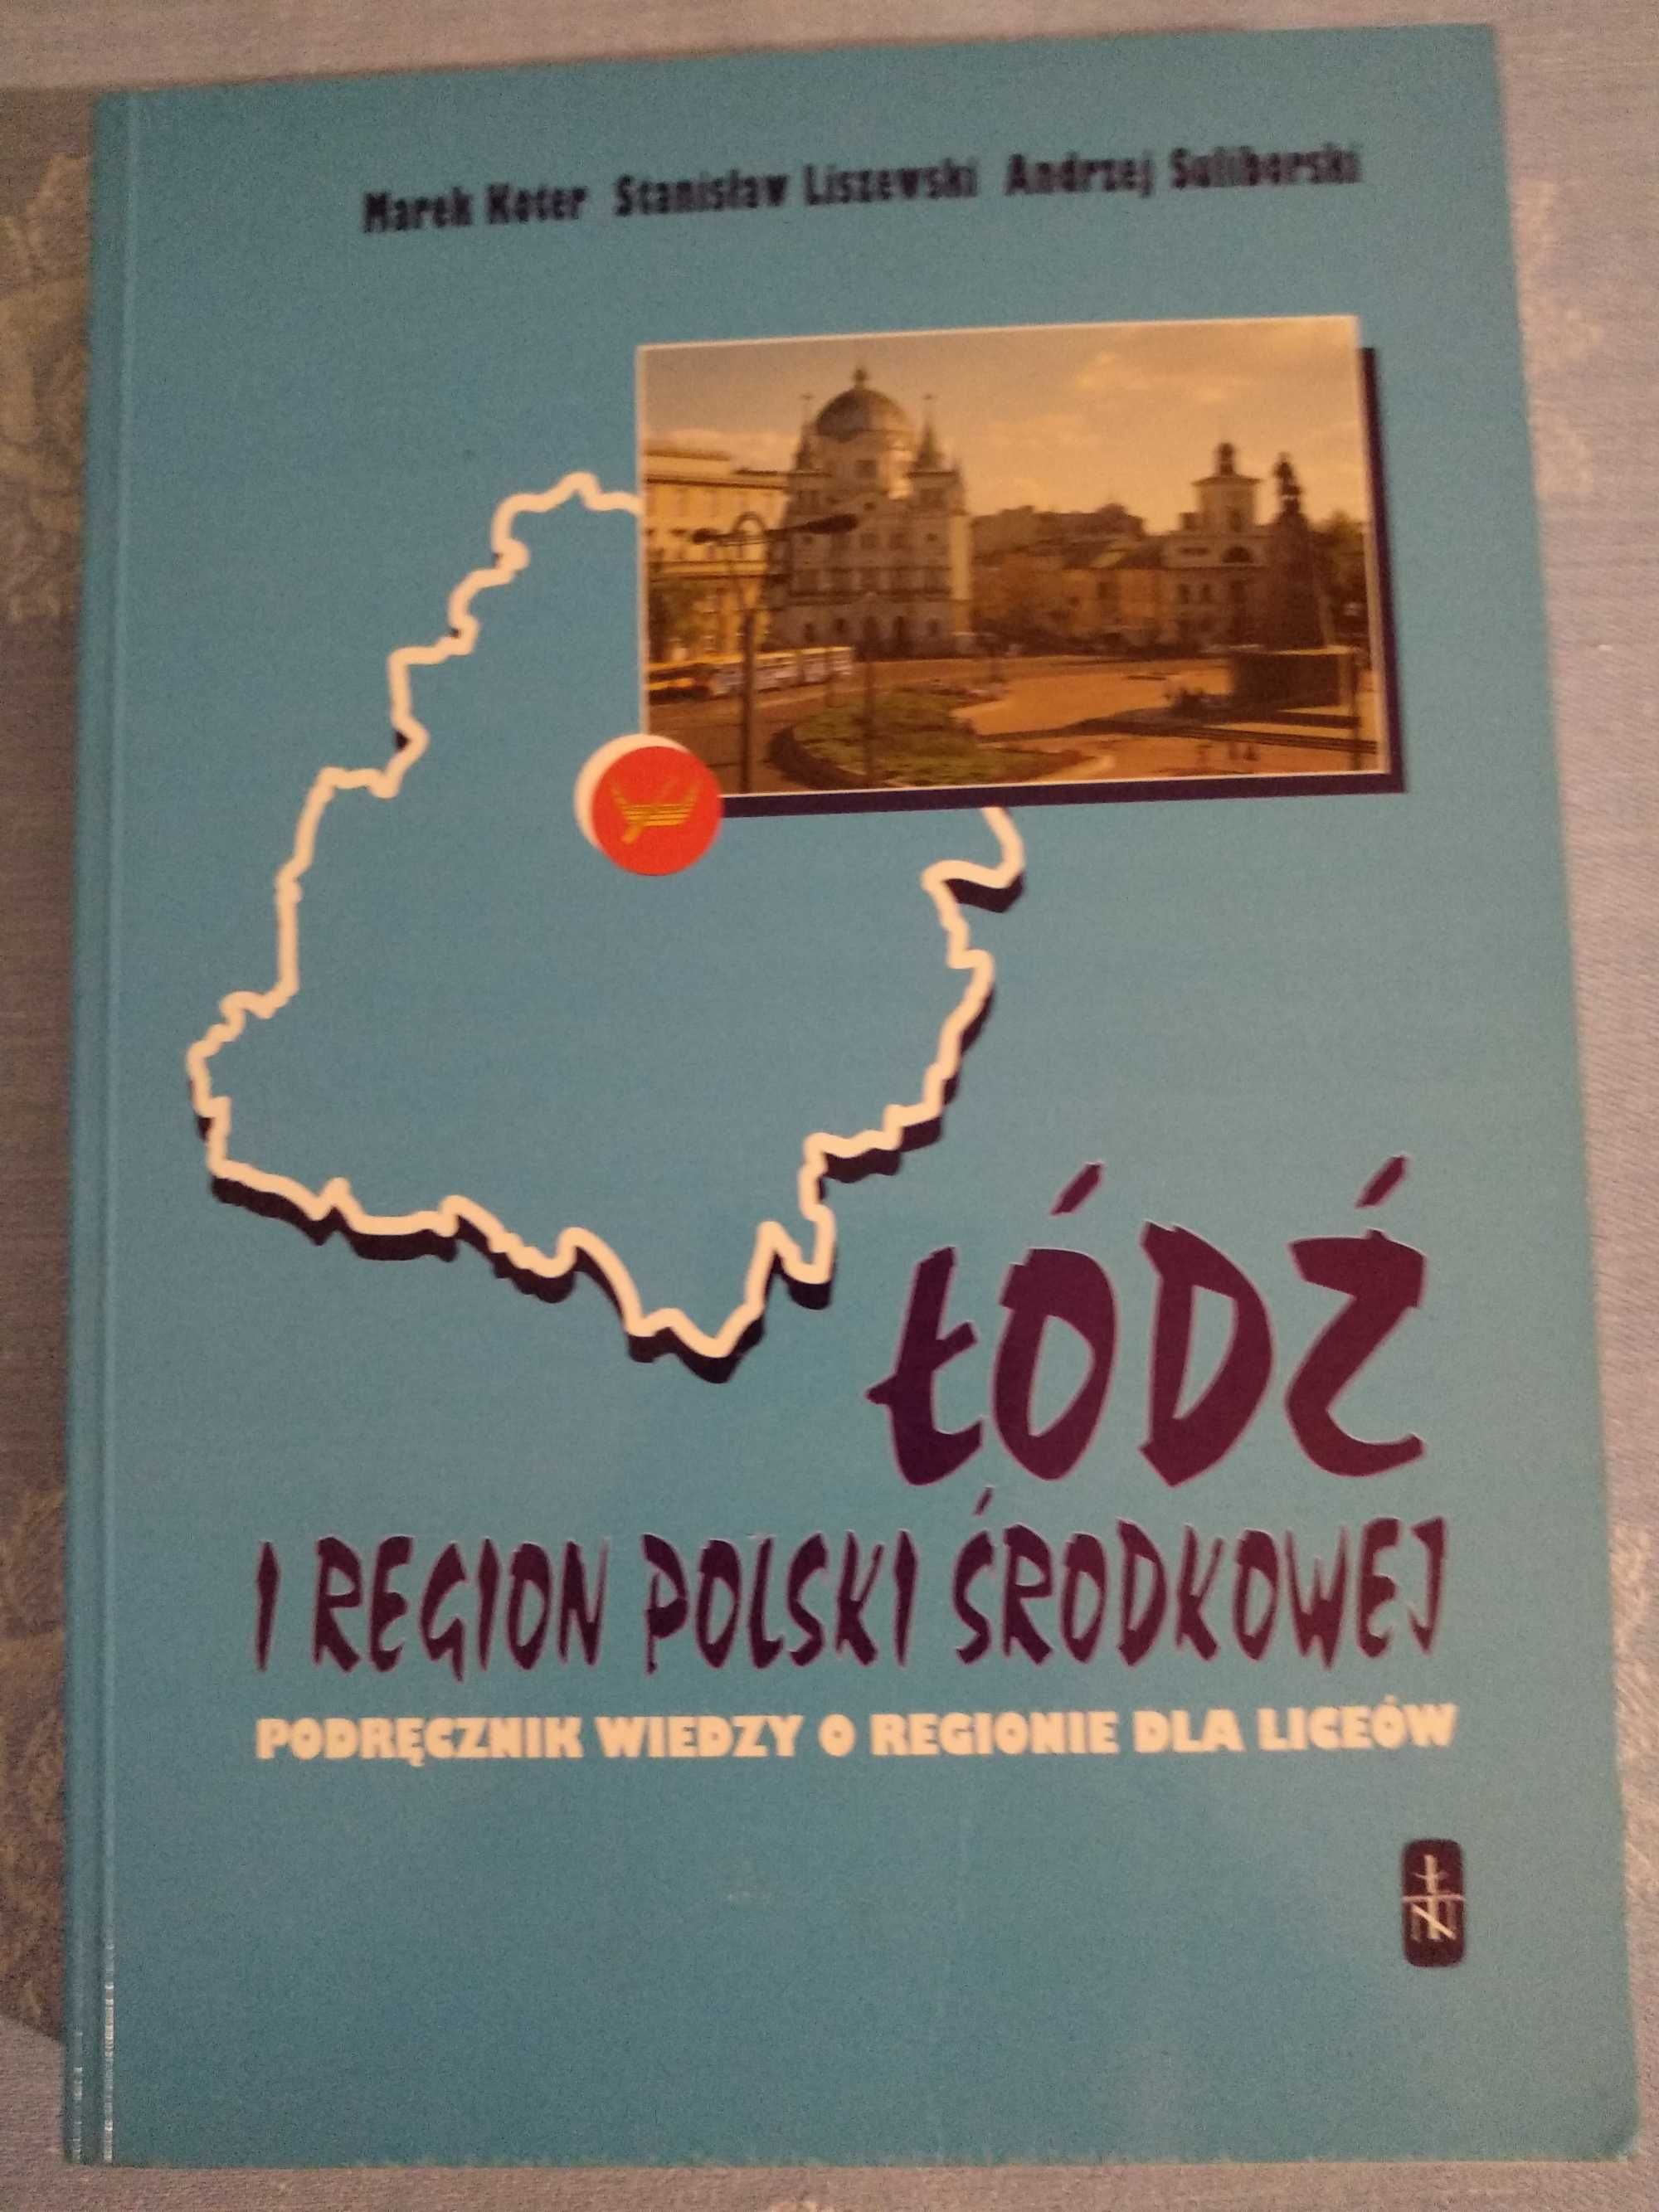 Łódź i region Polski Środkowej. Podręcznik. Koter Liszewski Suliborski